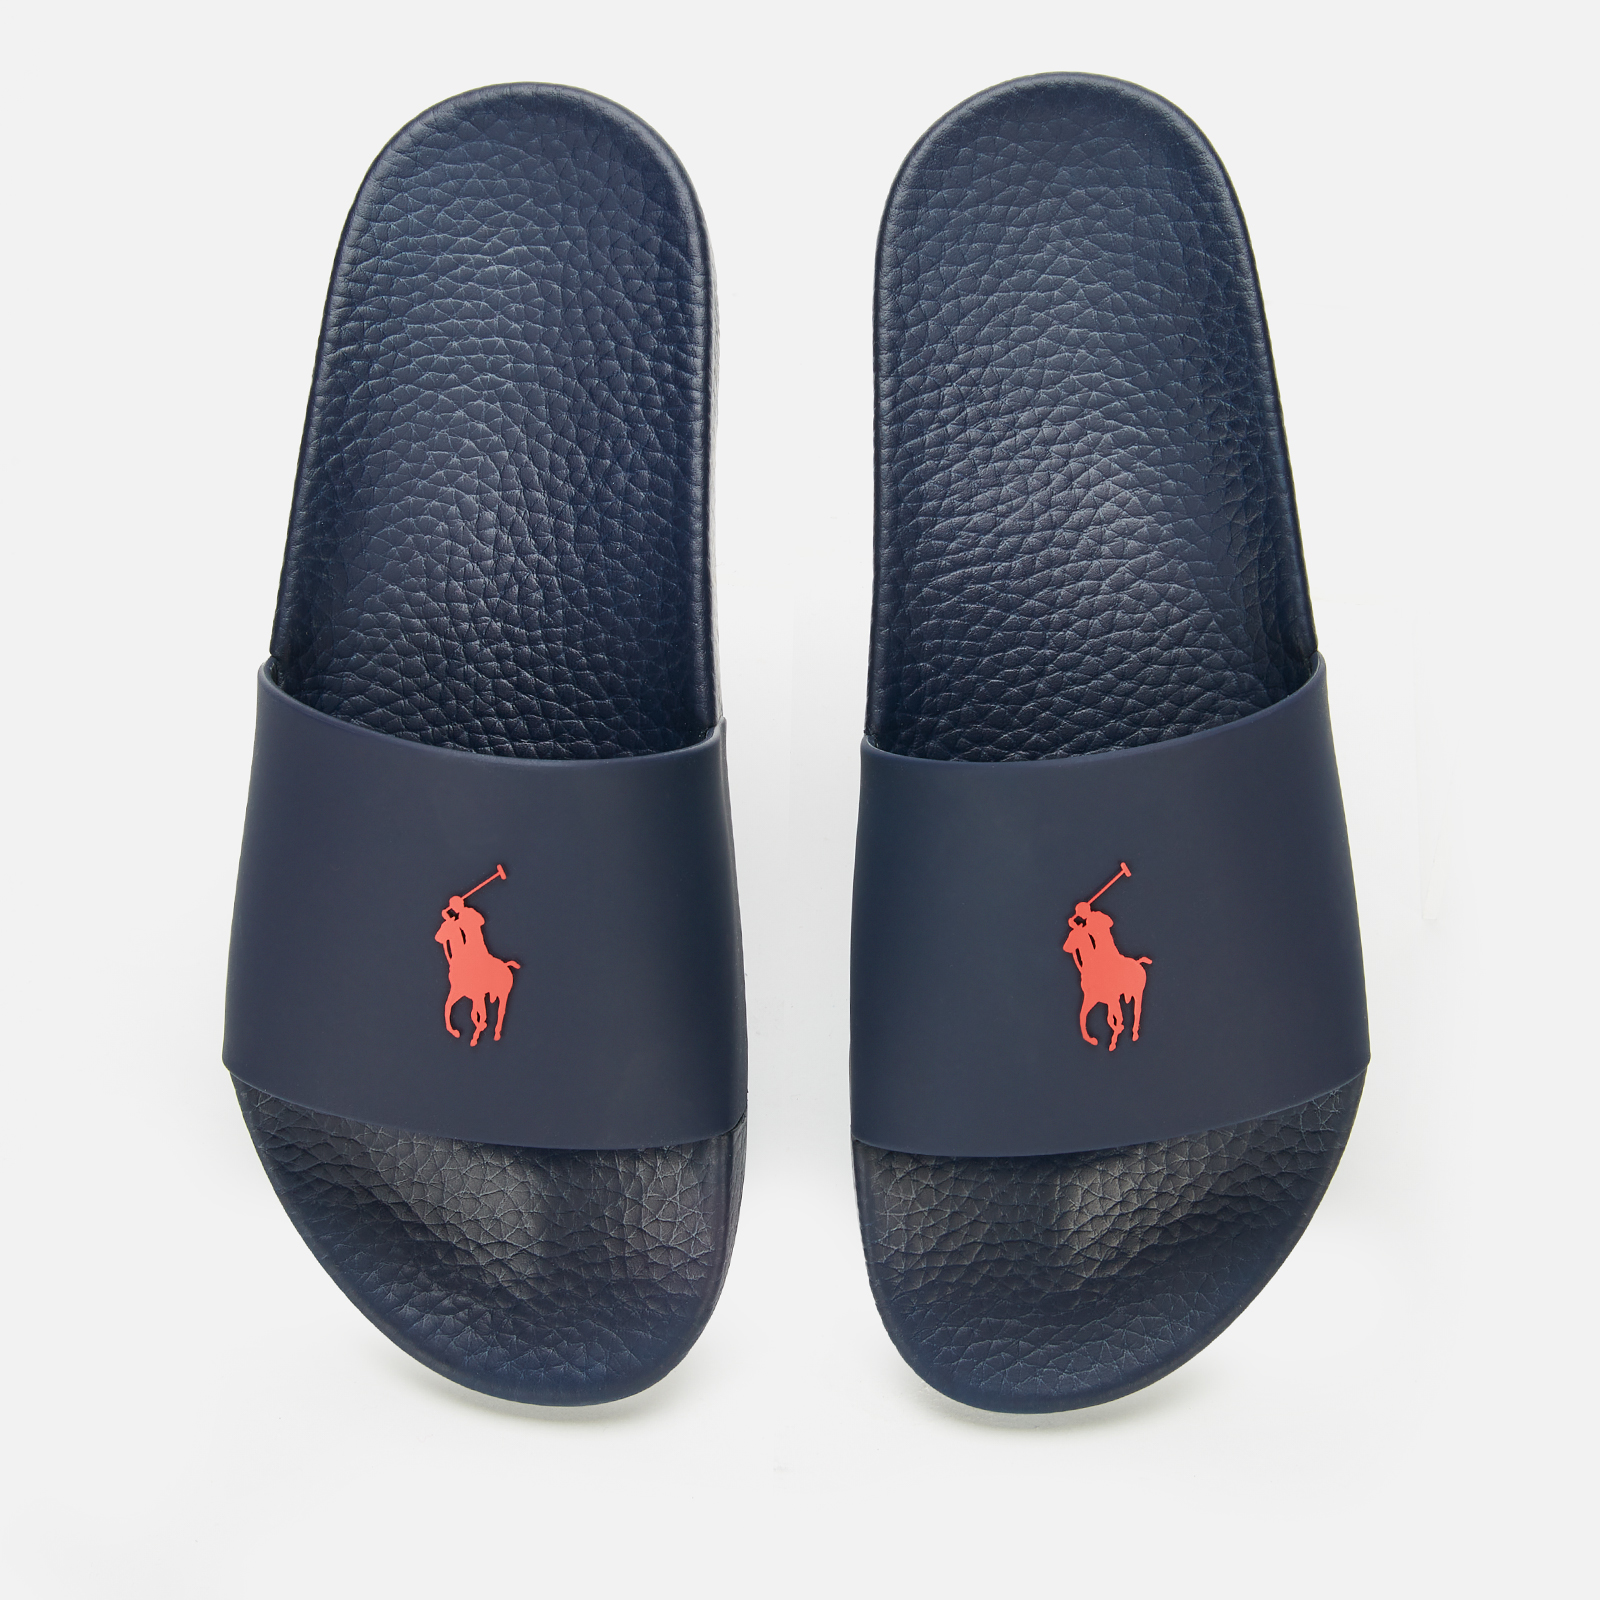 Polo Ralph Lauren Men's Slide Sandals - Navy/Red PP | Allsole